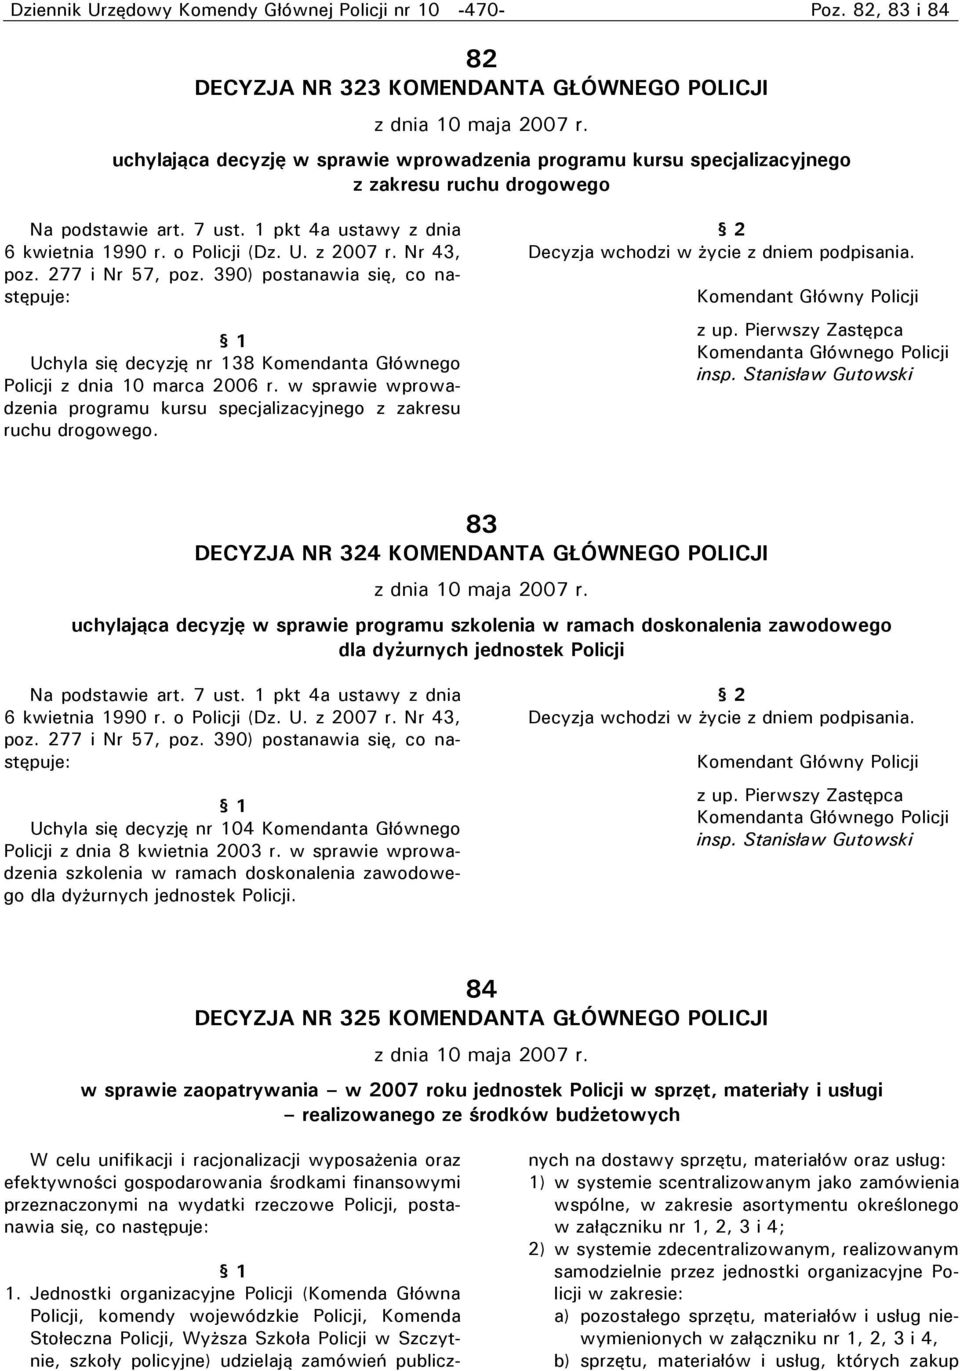 Nr 43, poz. 277 i Nr 57, poz. 390) postanawia się, co następuje: 1 Uchyla się decyzję nr 138 Komendanta Głównego Policji z dnia 10 marca 2006 r.